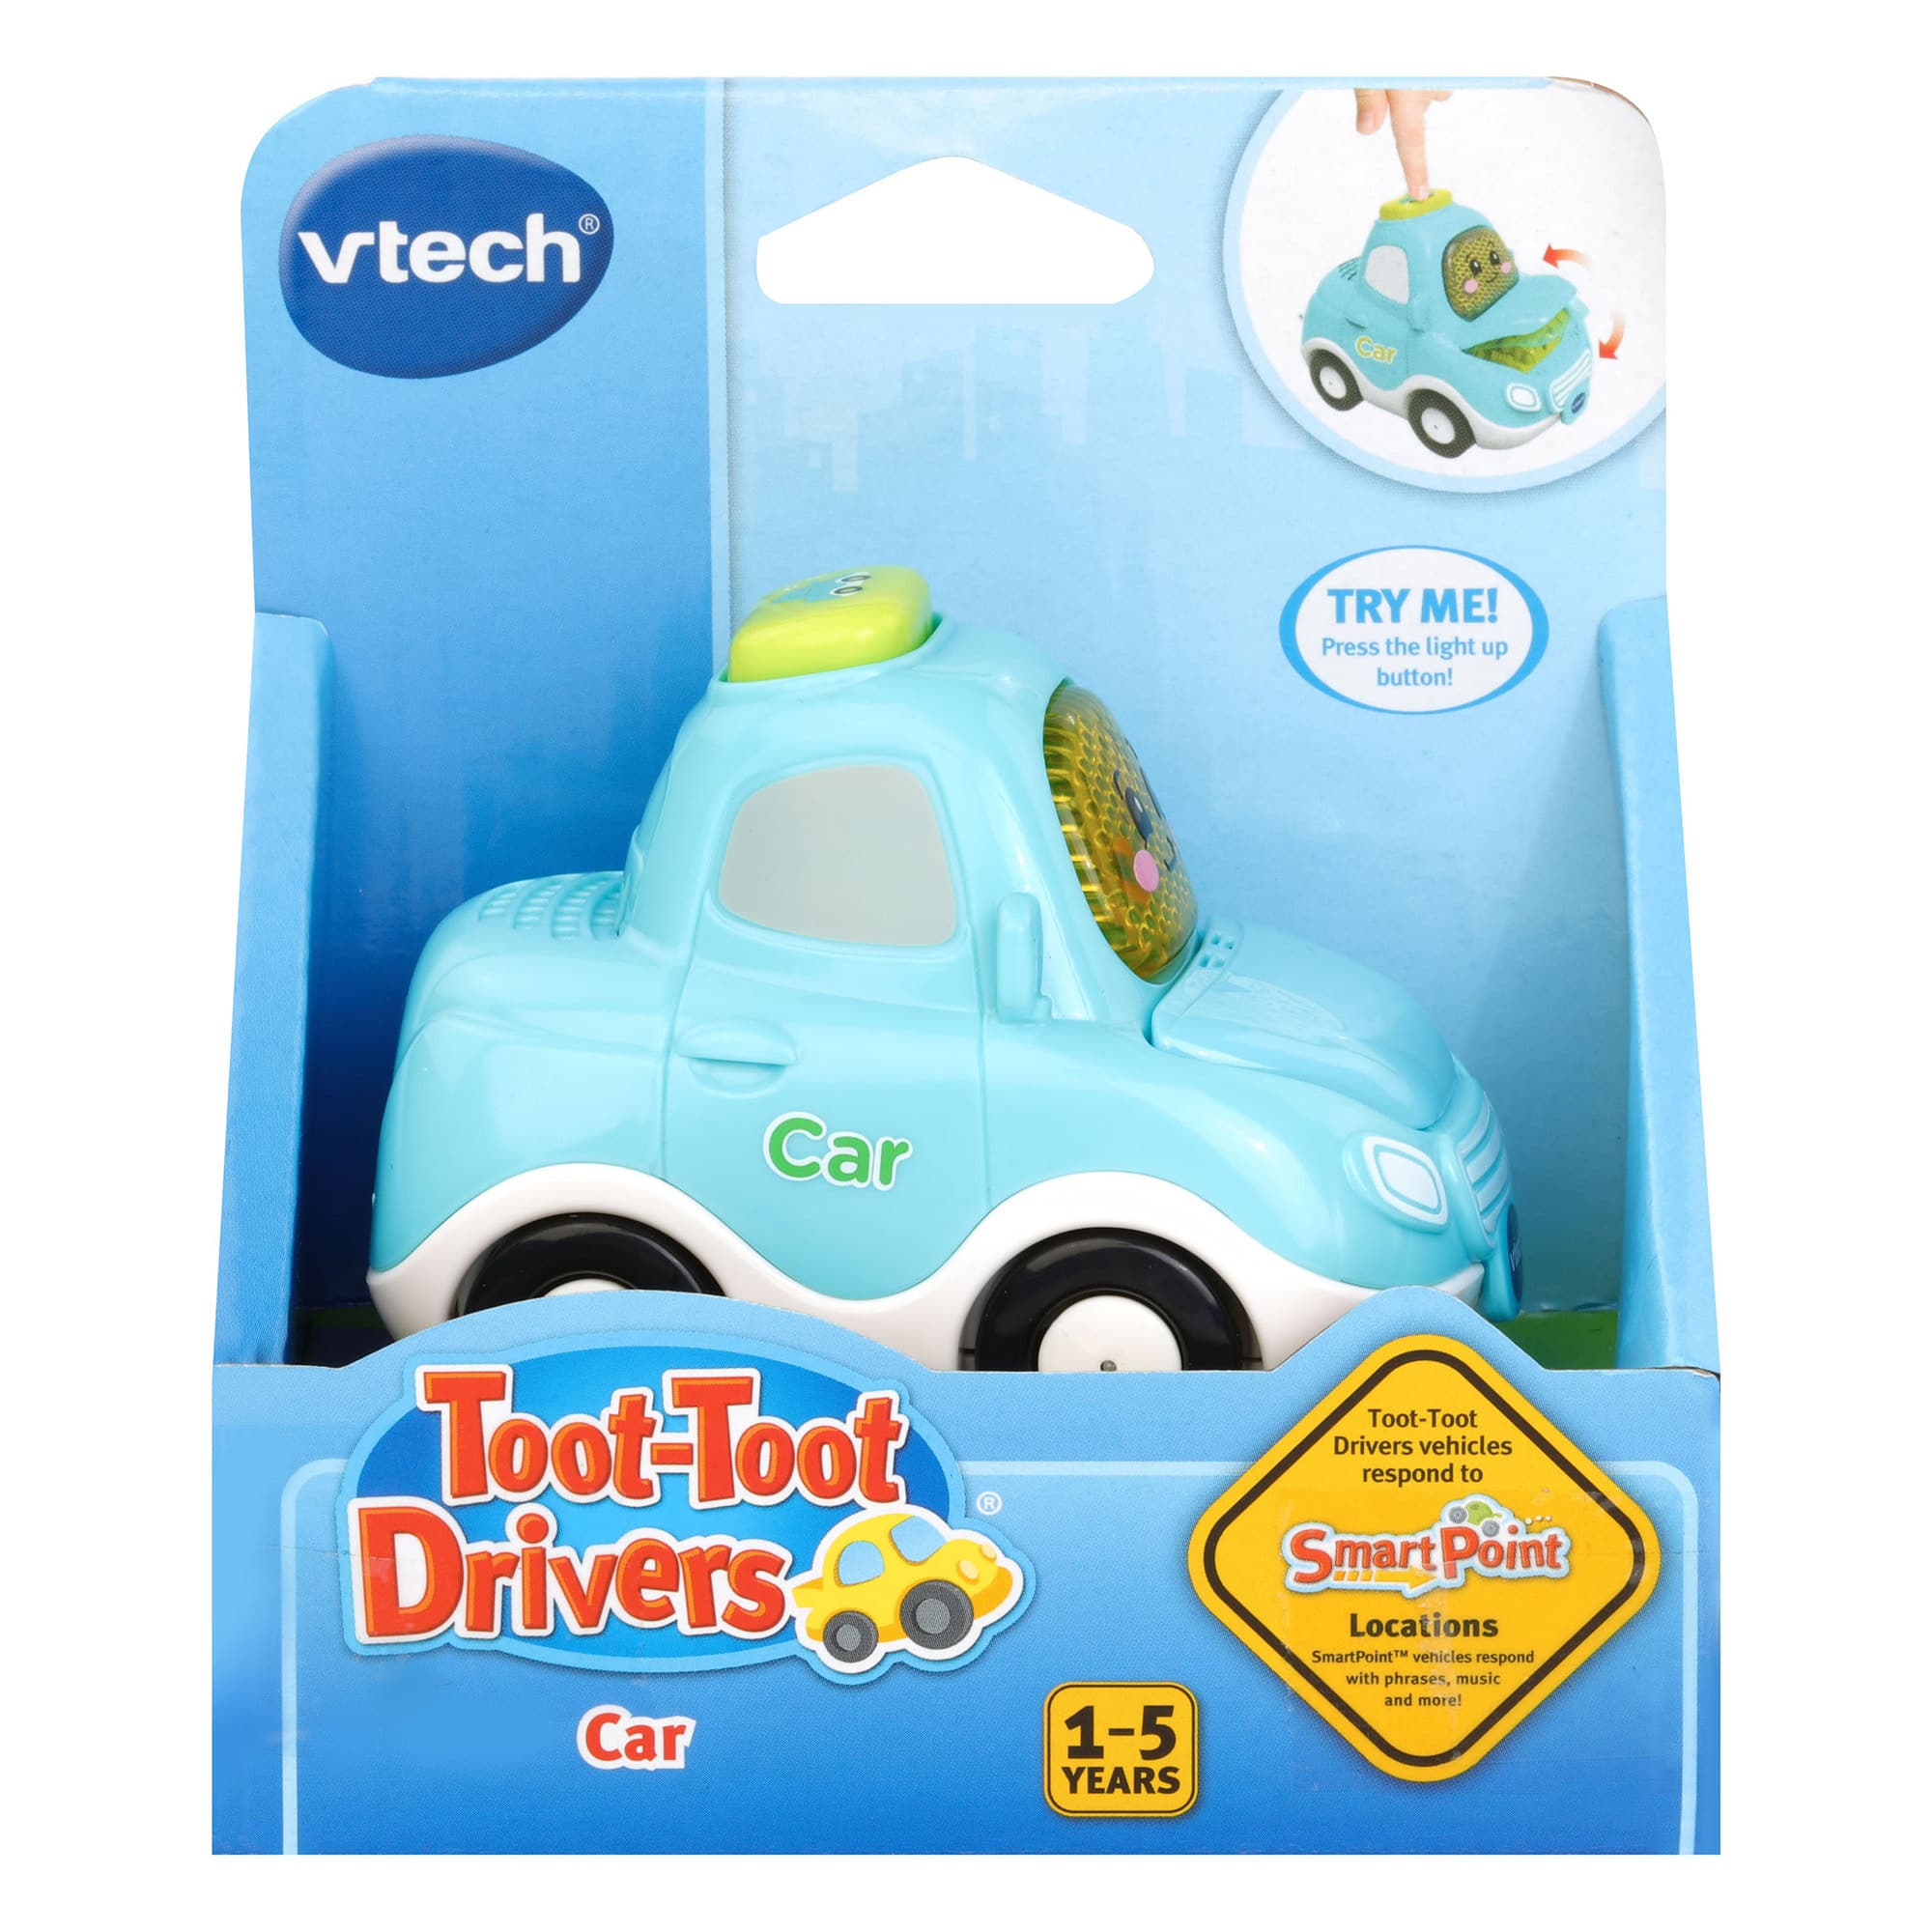 Vtech 501403 Toot-Toot Driver e scoprire auto della polizia giocattolo 